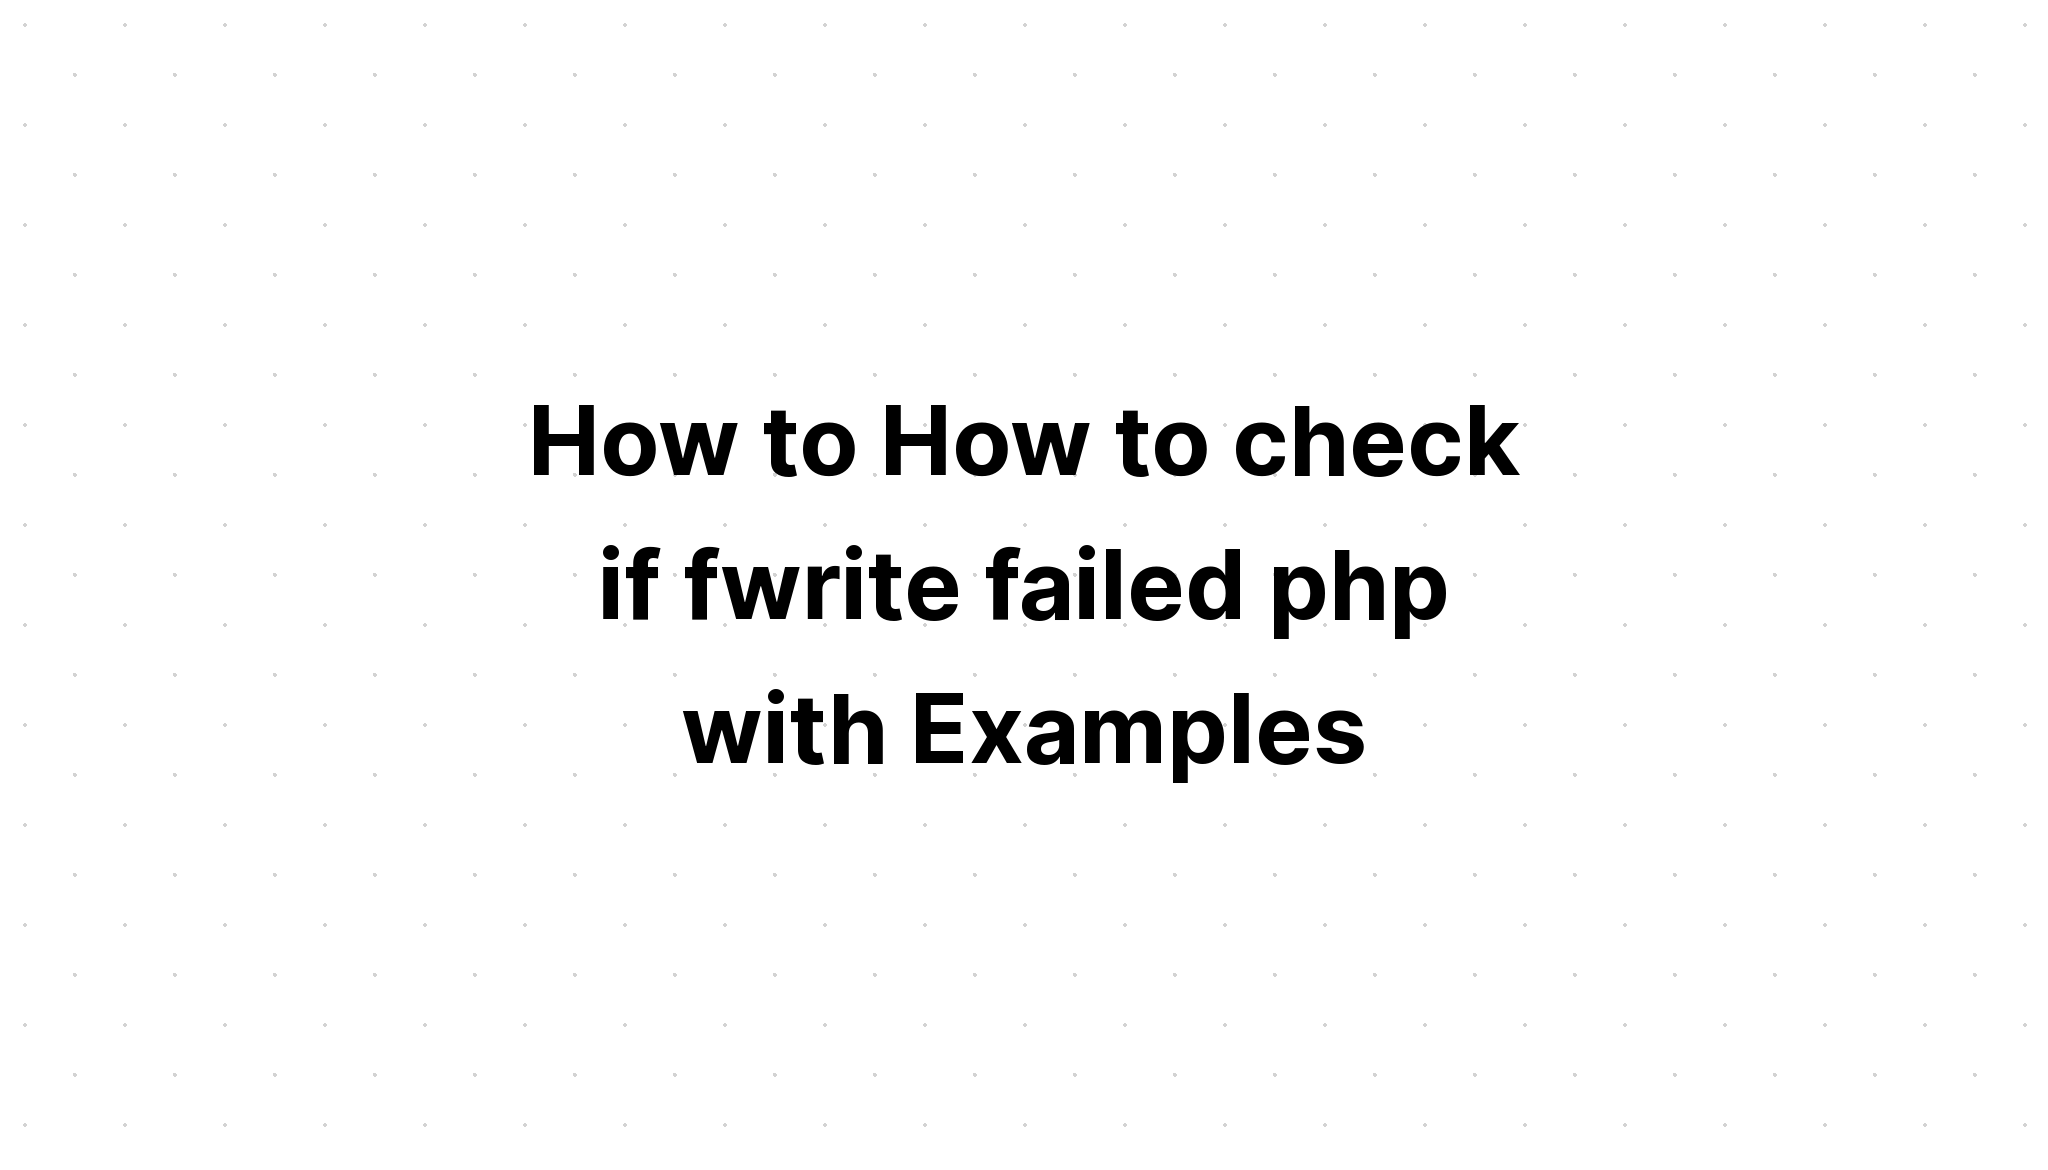 Cách kiểm tra xem fwrite có bị lỗi php hay không với các ví dụ